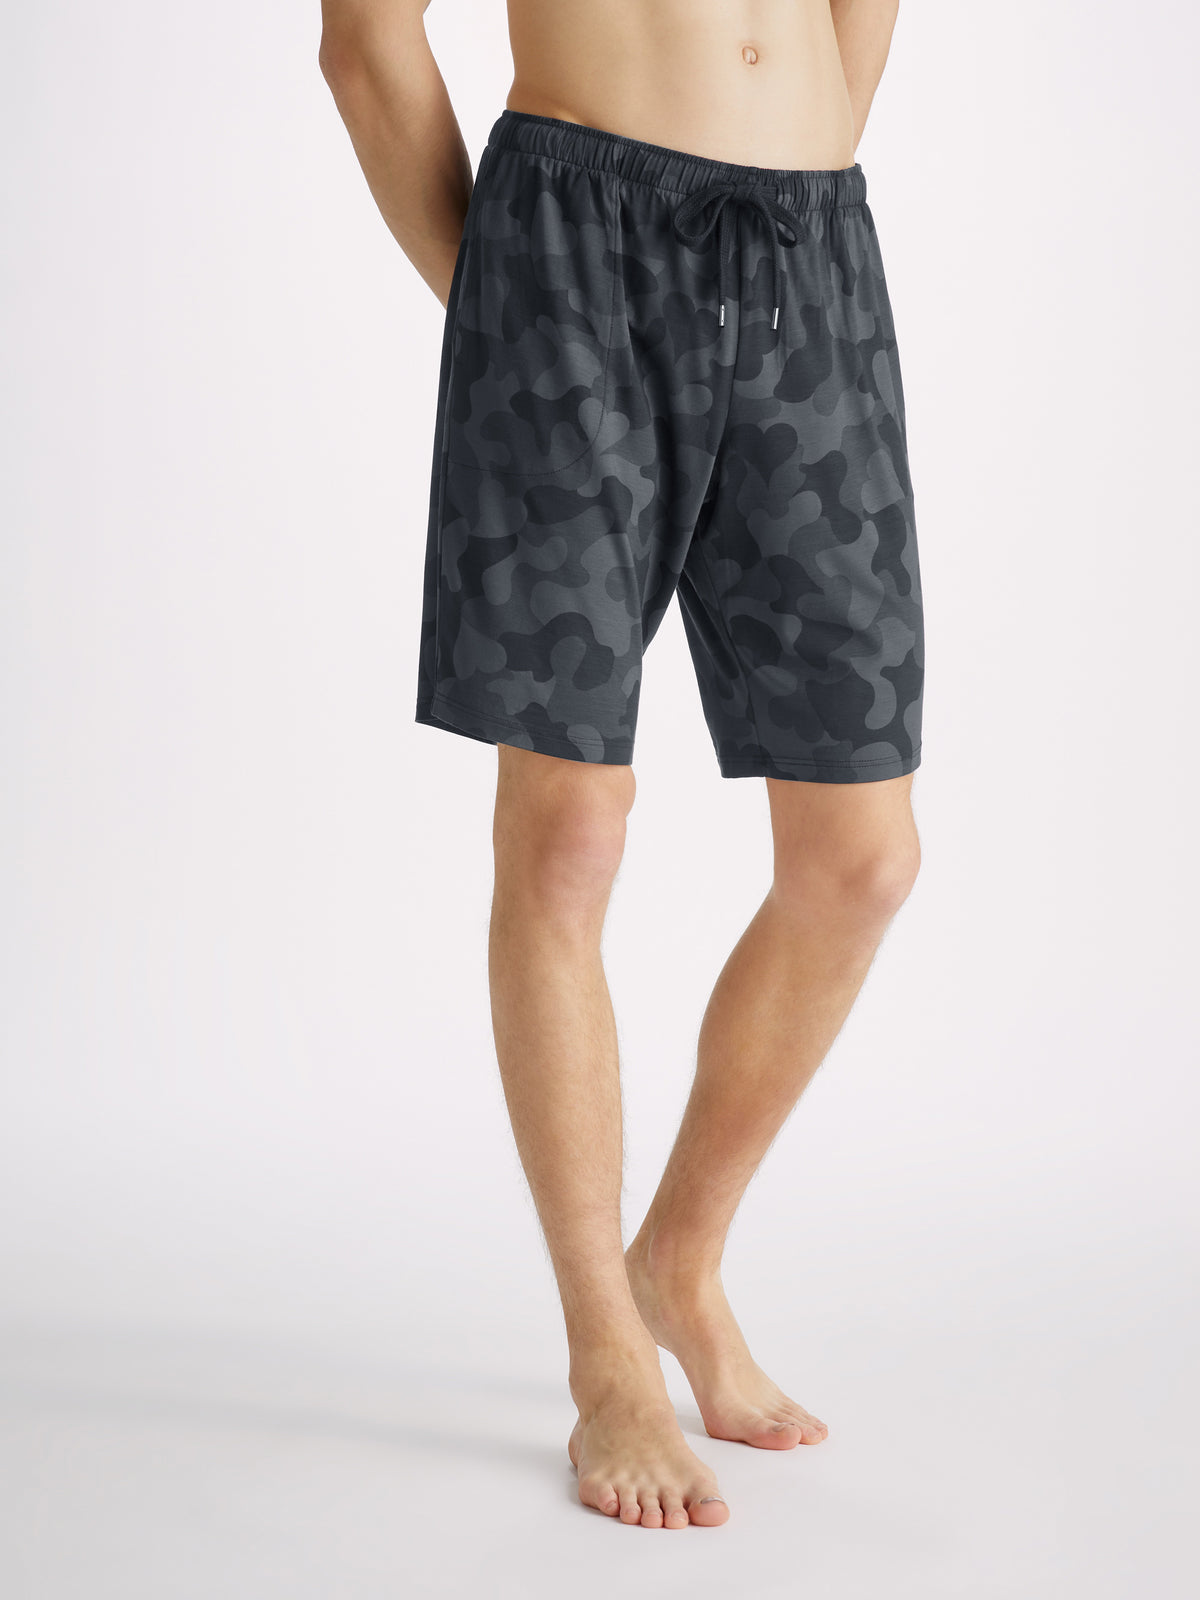 Men's Lounge Shorts London 11 Micro Modal Black